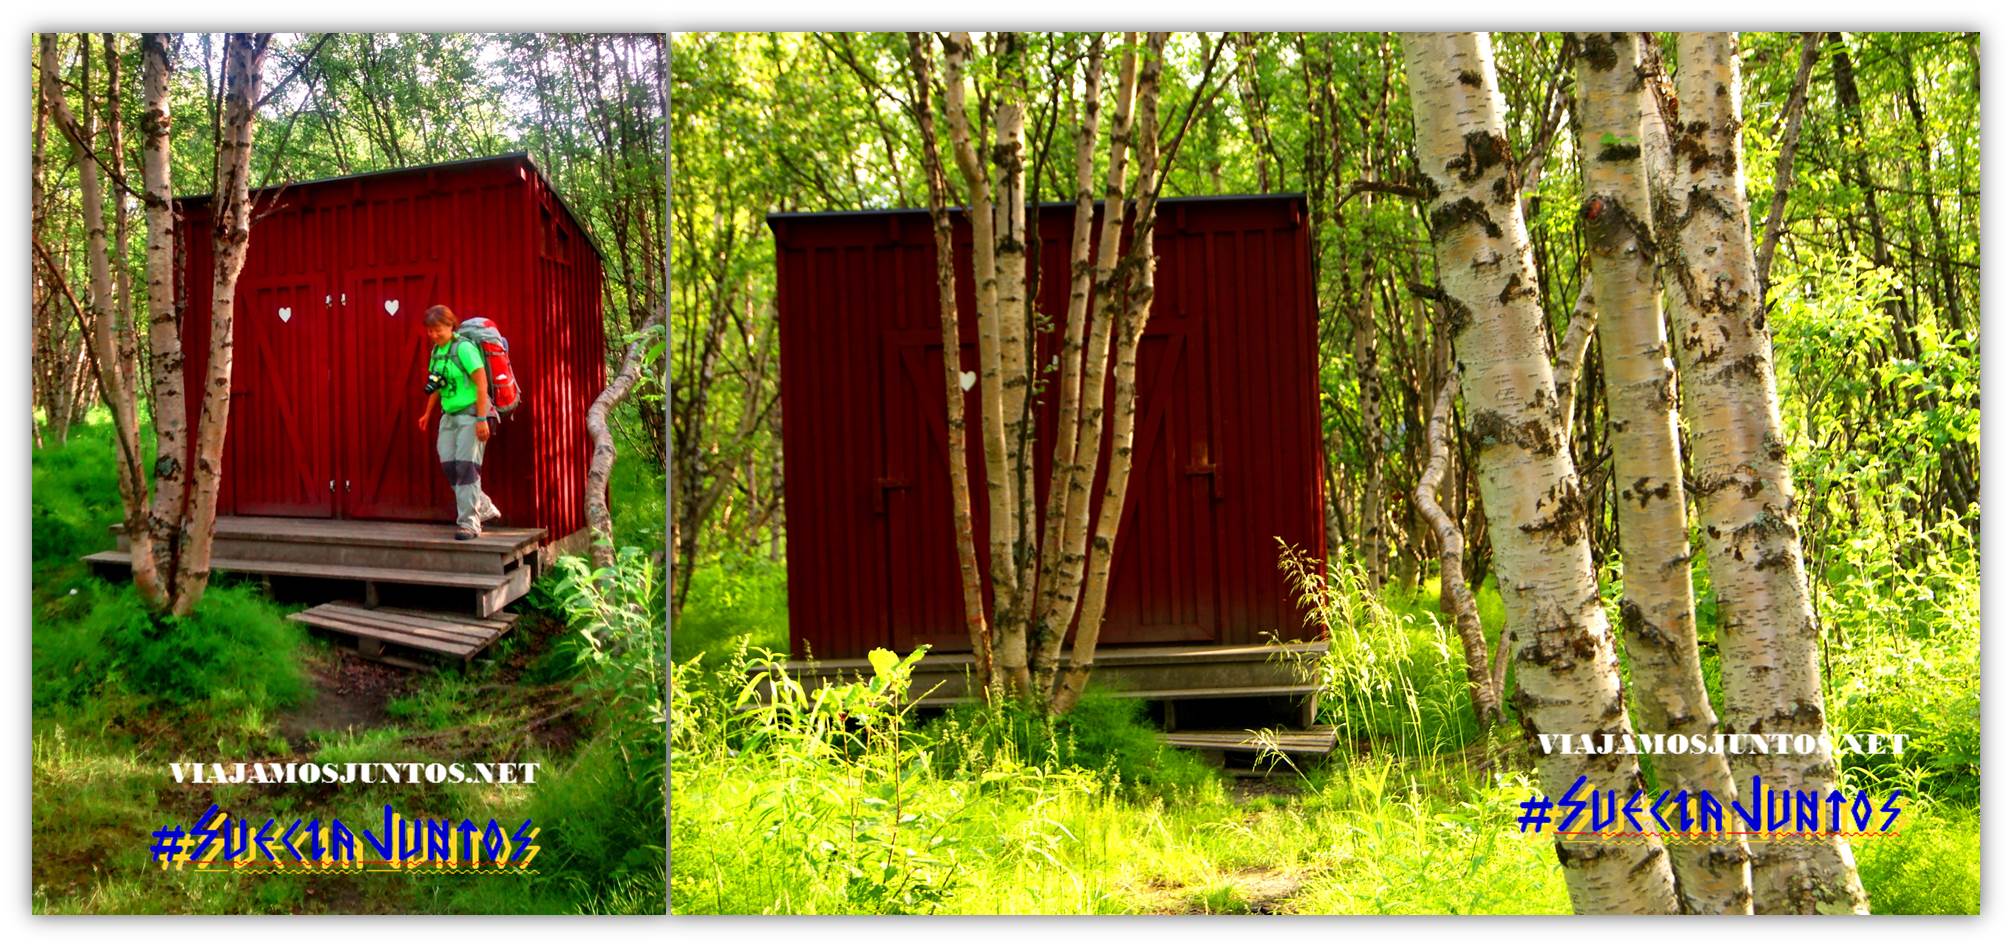 Kungsleden, Suecia, lagos, naturaleza, viajar por libre, vistas, paisajes, Laponia Sueca, inspiración, información práctica, tips, consejos, viajar por libre, alojamiento, diario